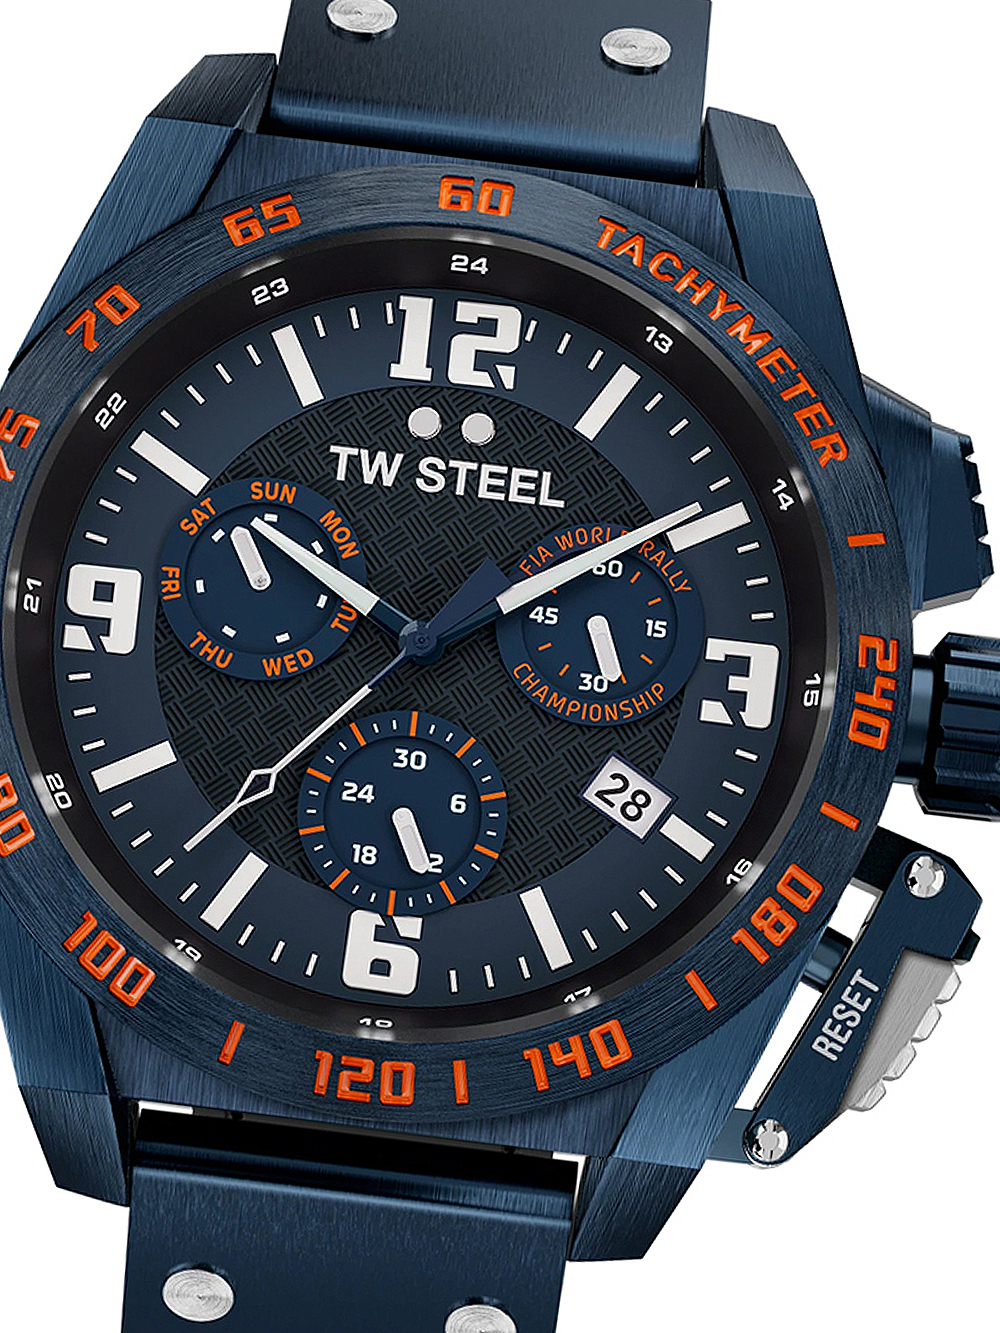 Pánské hodinky TW-Steel TW1020 Fia World Rally